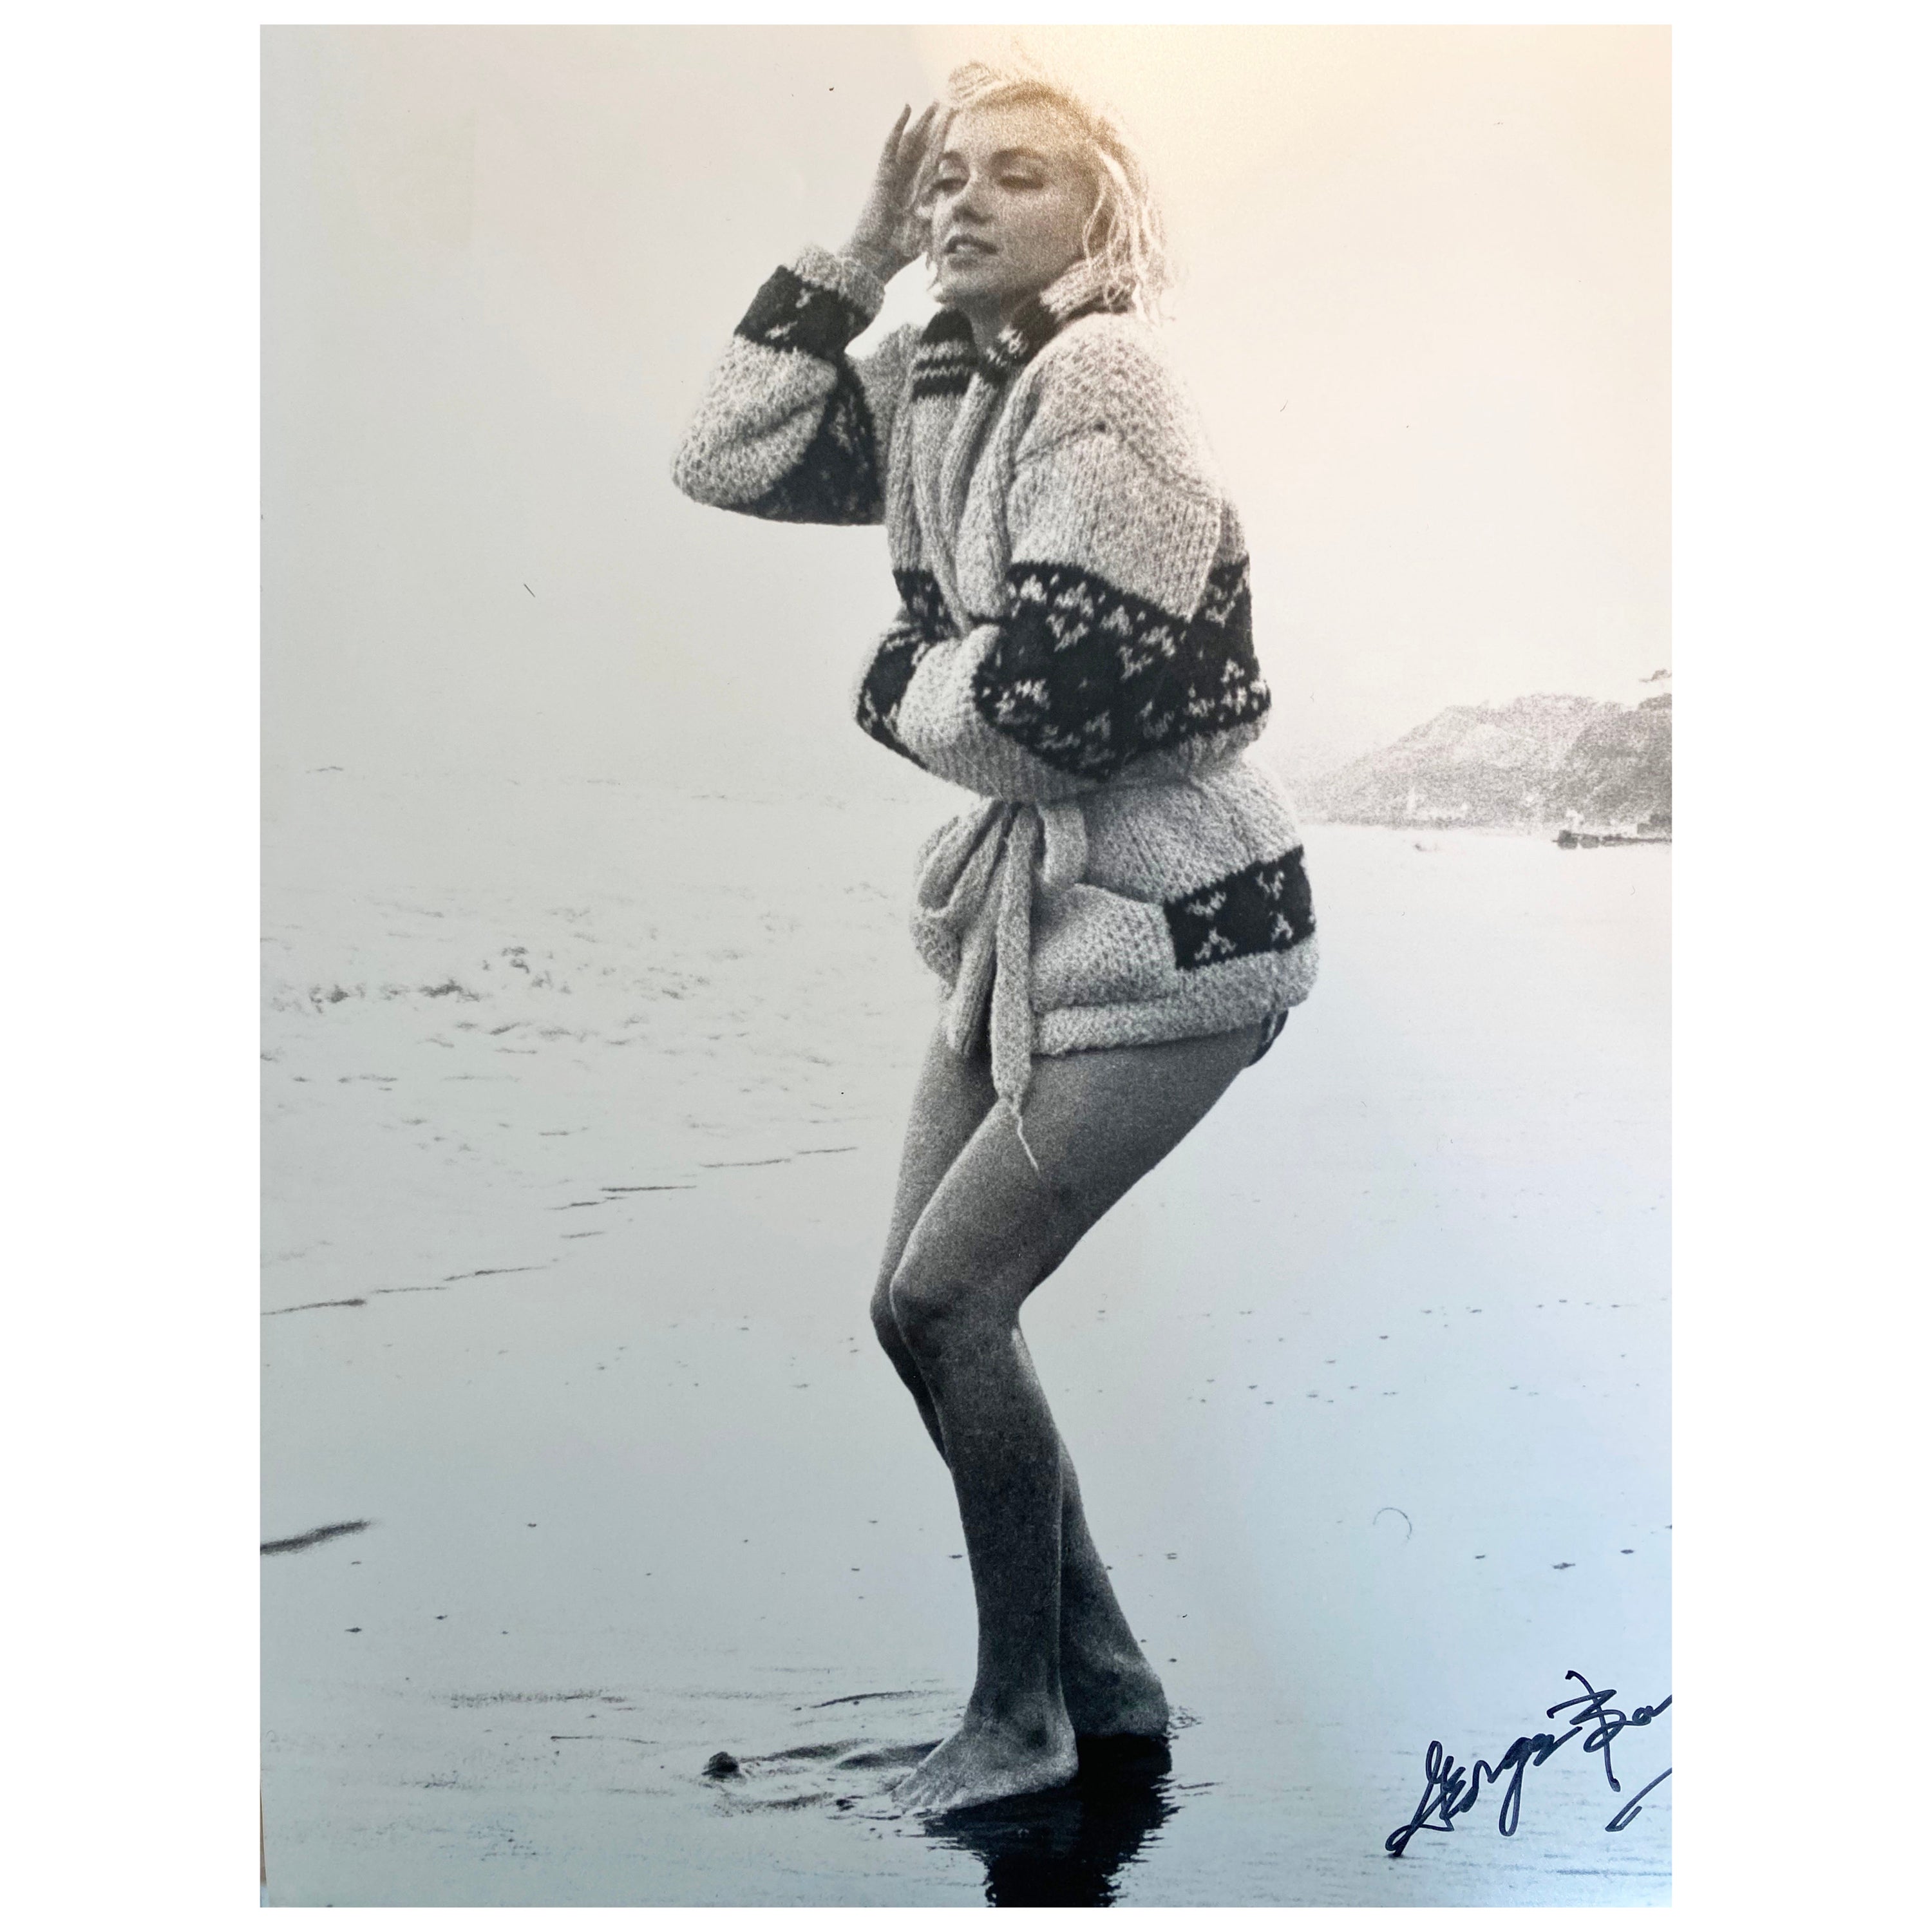 Fotografie von Marilyn Monroe von G. Barris  fotografie – 1962  